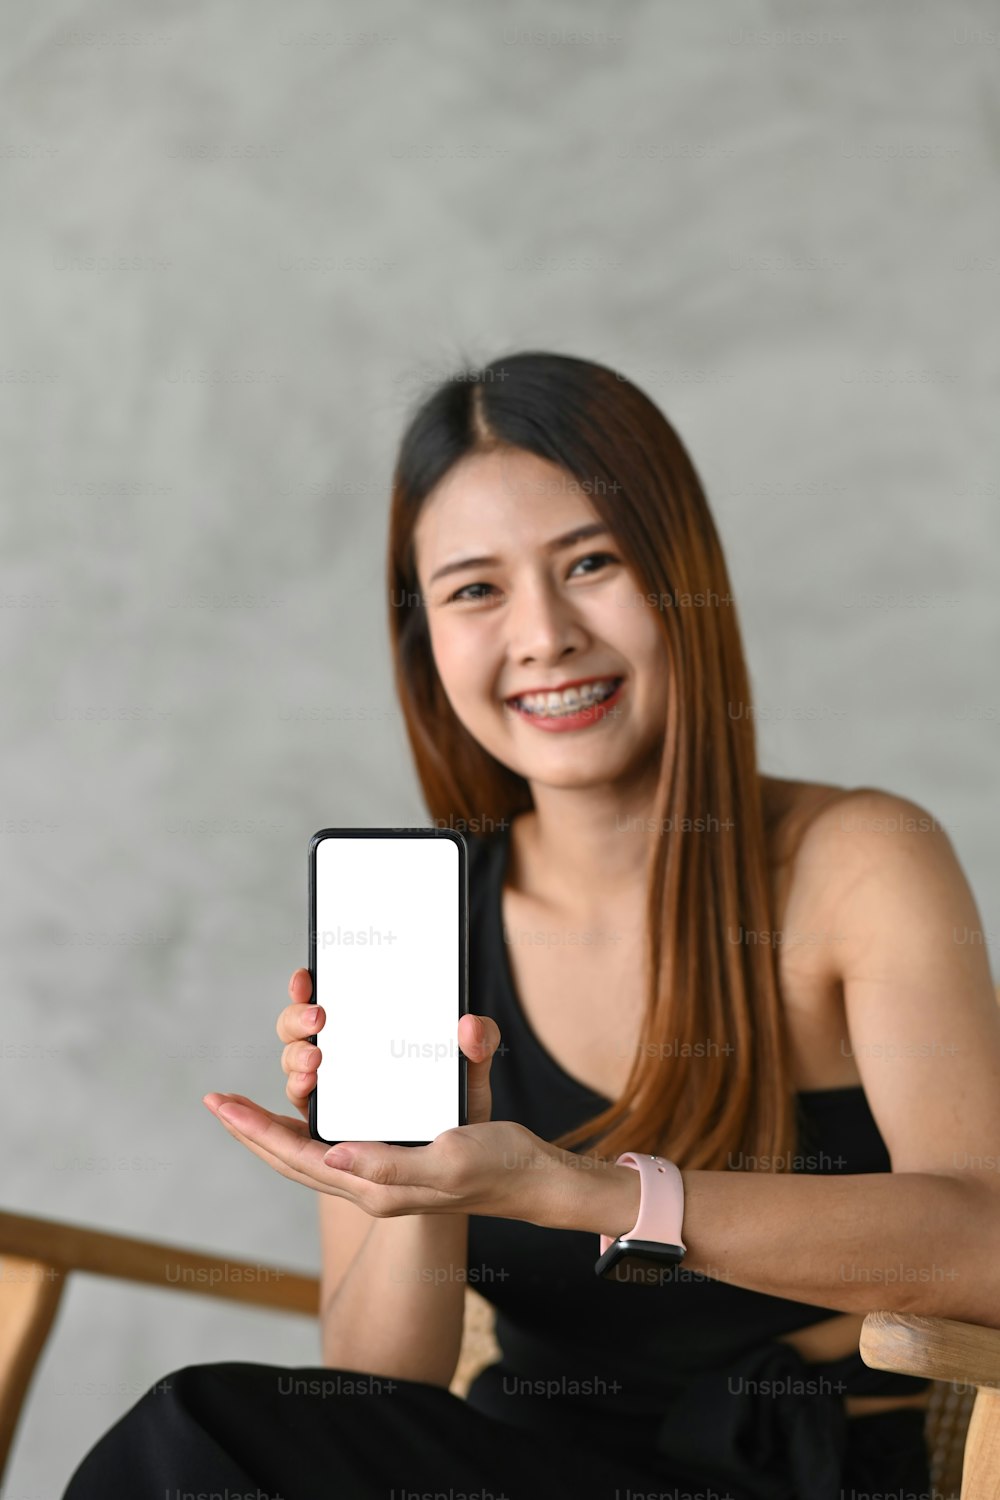 빈 화면으로 스마트폰을 보여주는 젊은 아시아 여성의 초상화.